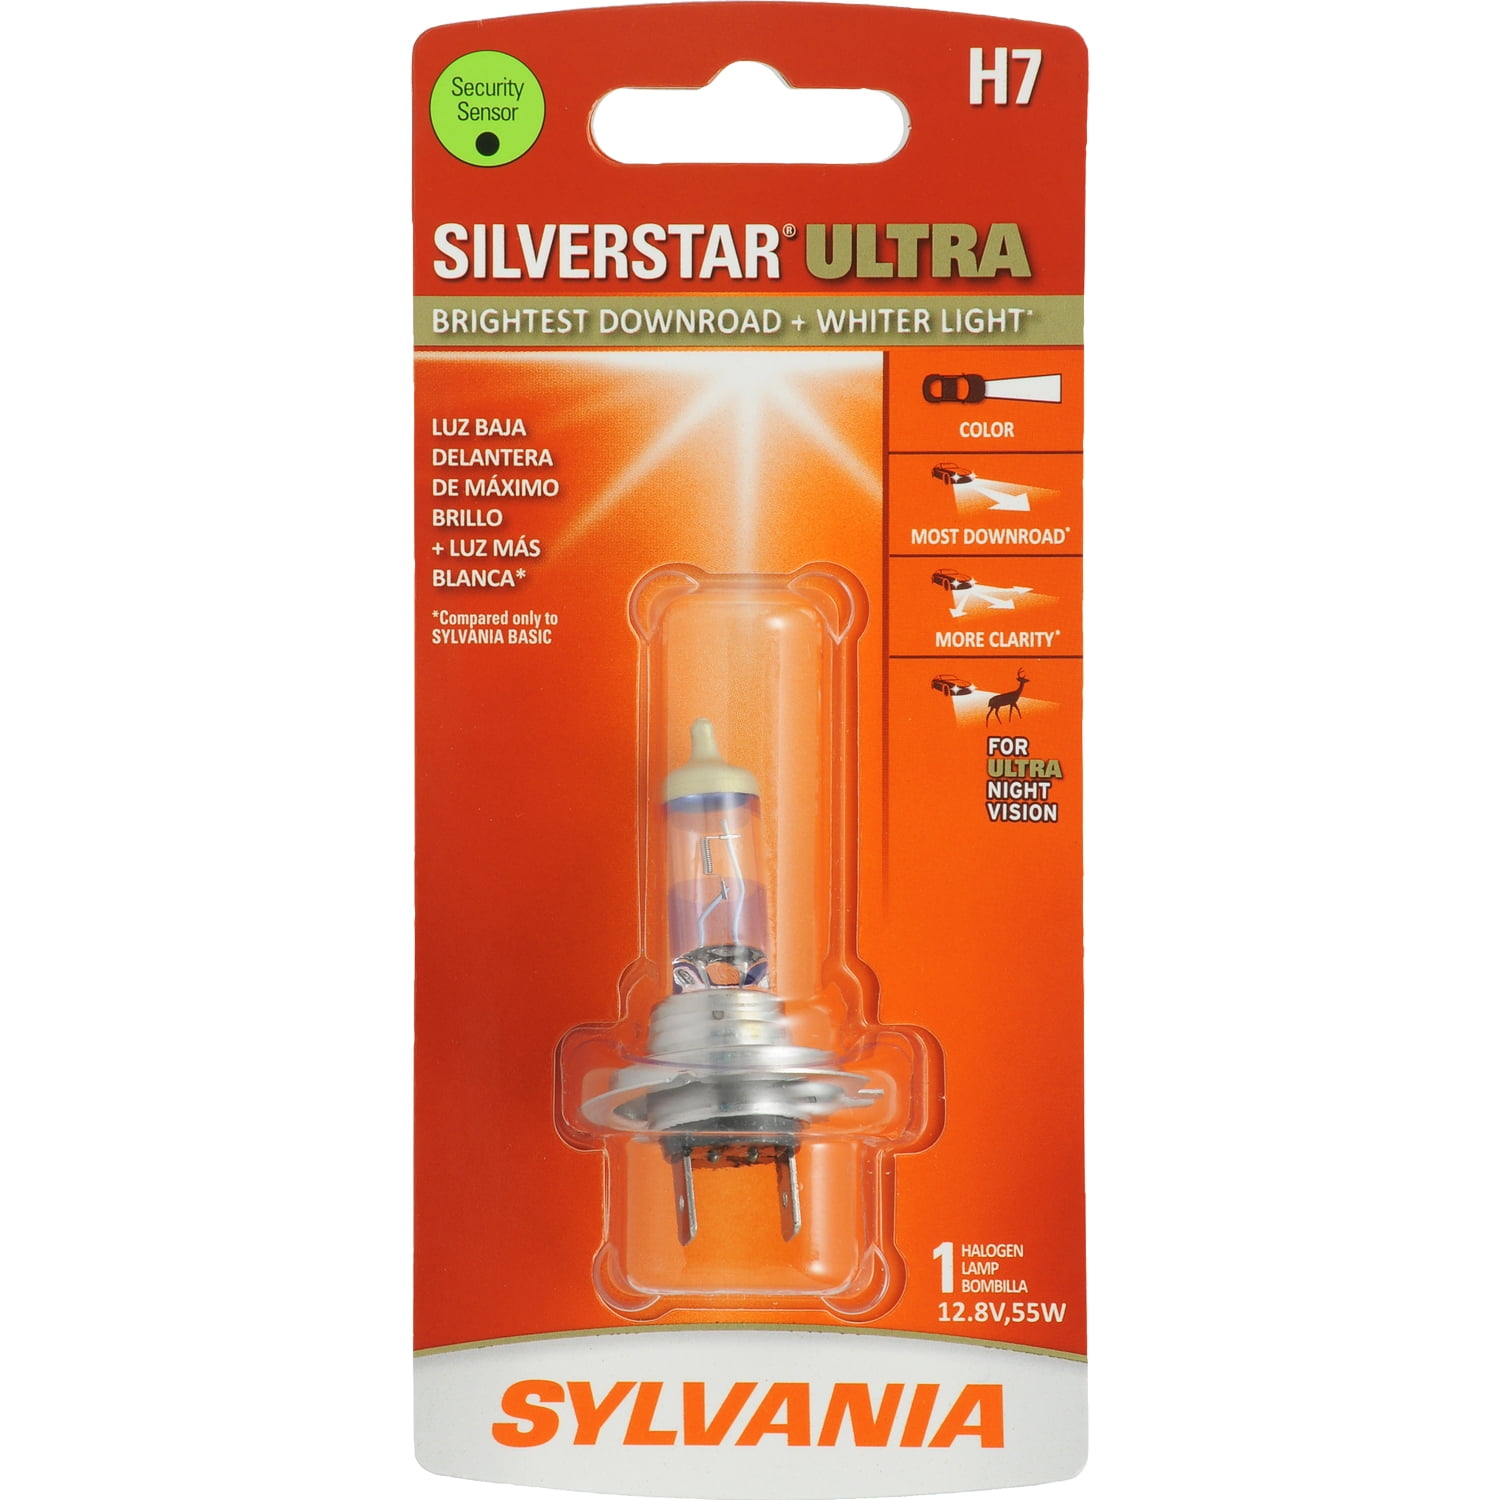 Sylvania H7 SilverStar Ultra Halogen Headlight Bulb, Pack of 1